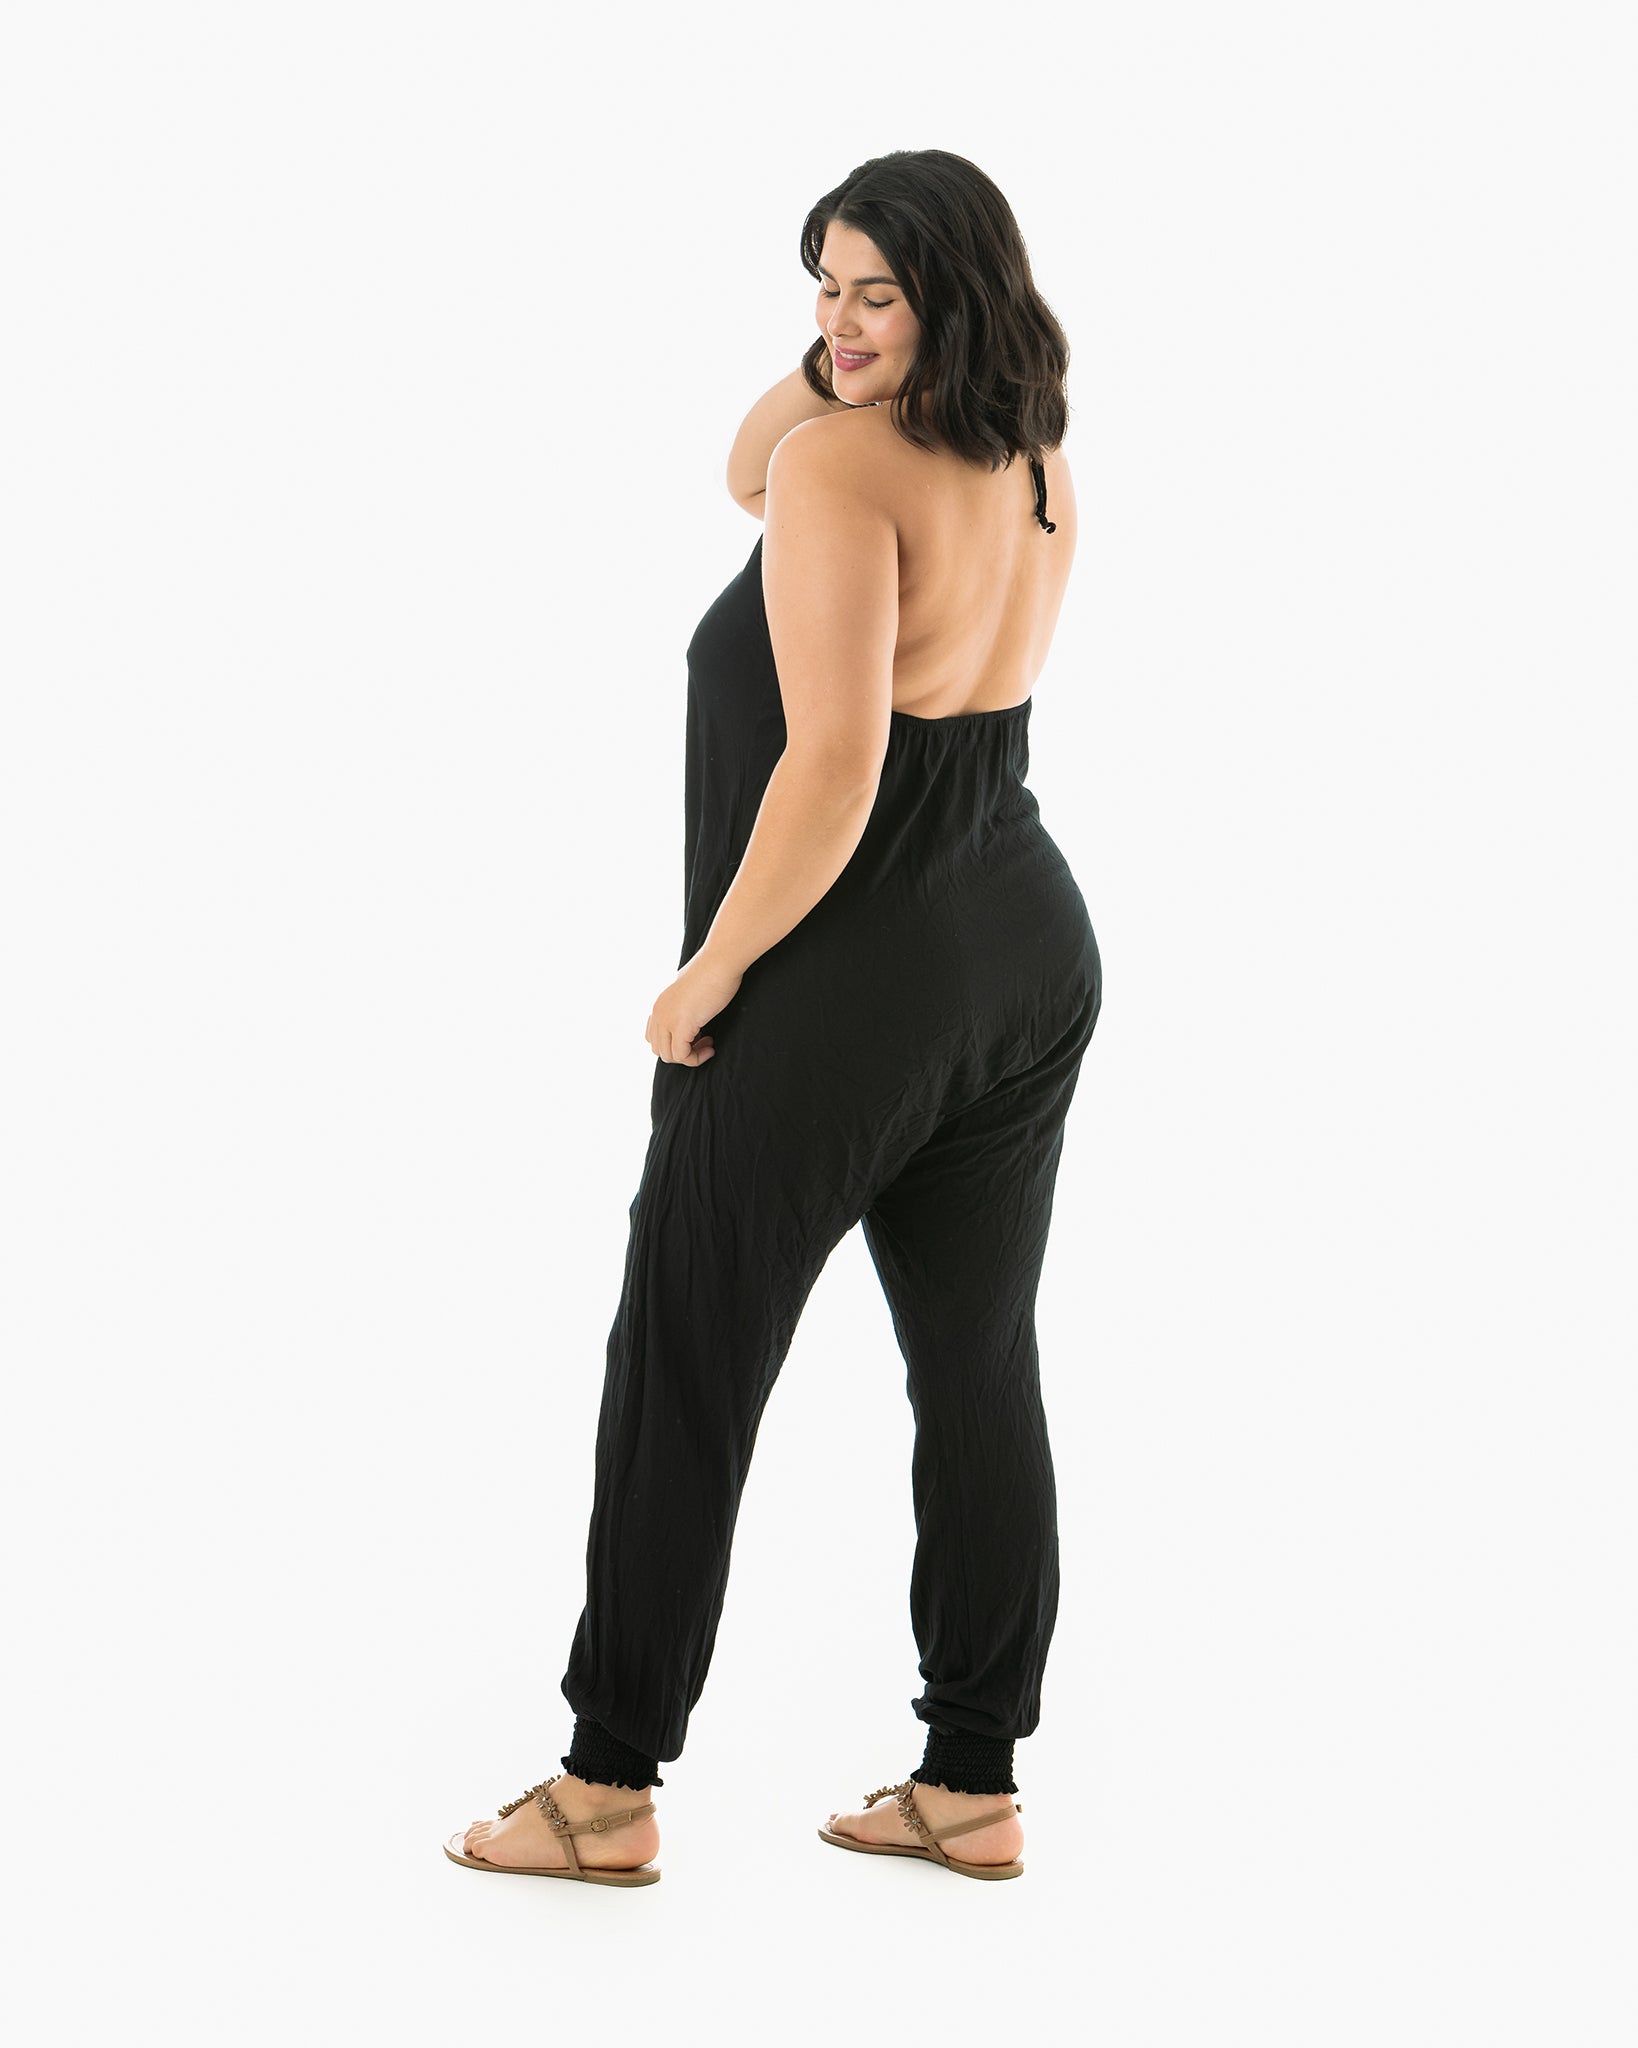 Women's Harem Pants 100% cotton Romper Jumpsuit By: Buddha Pants